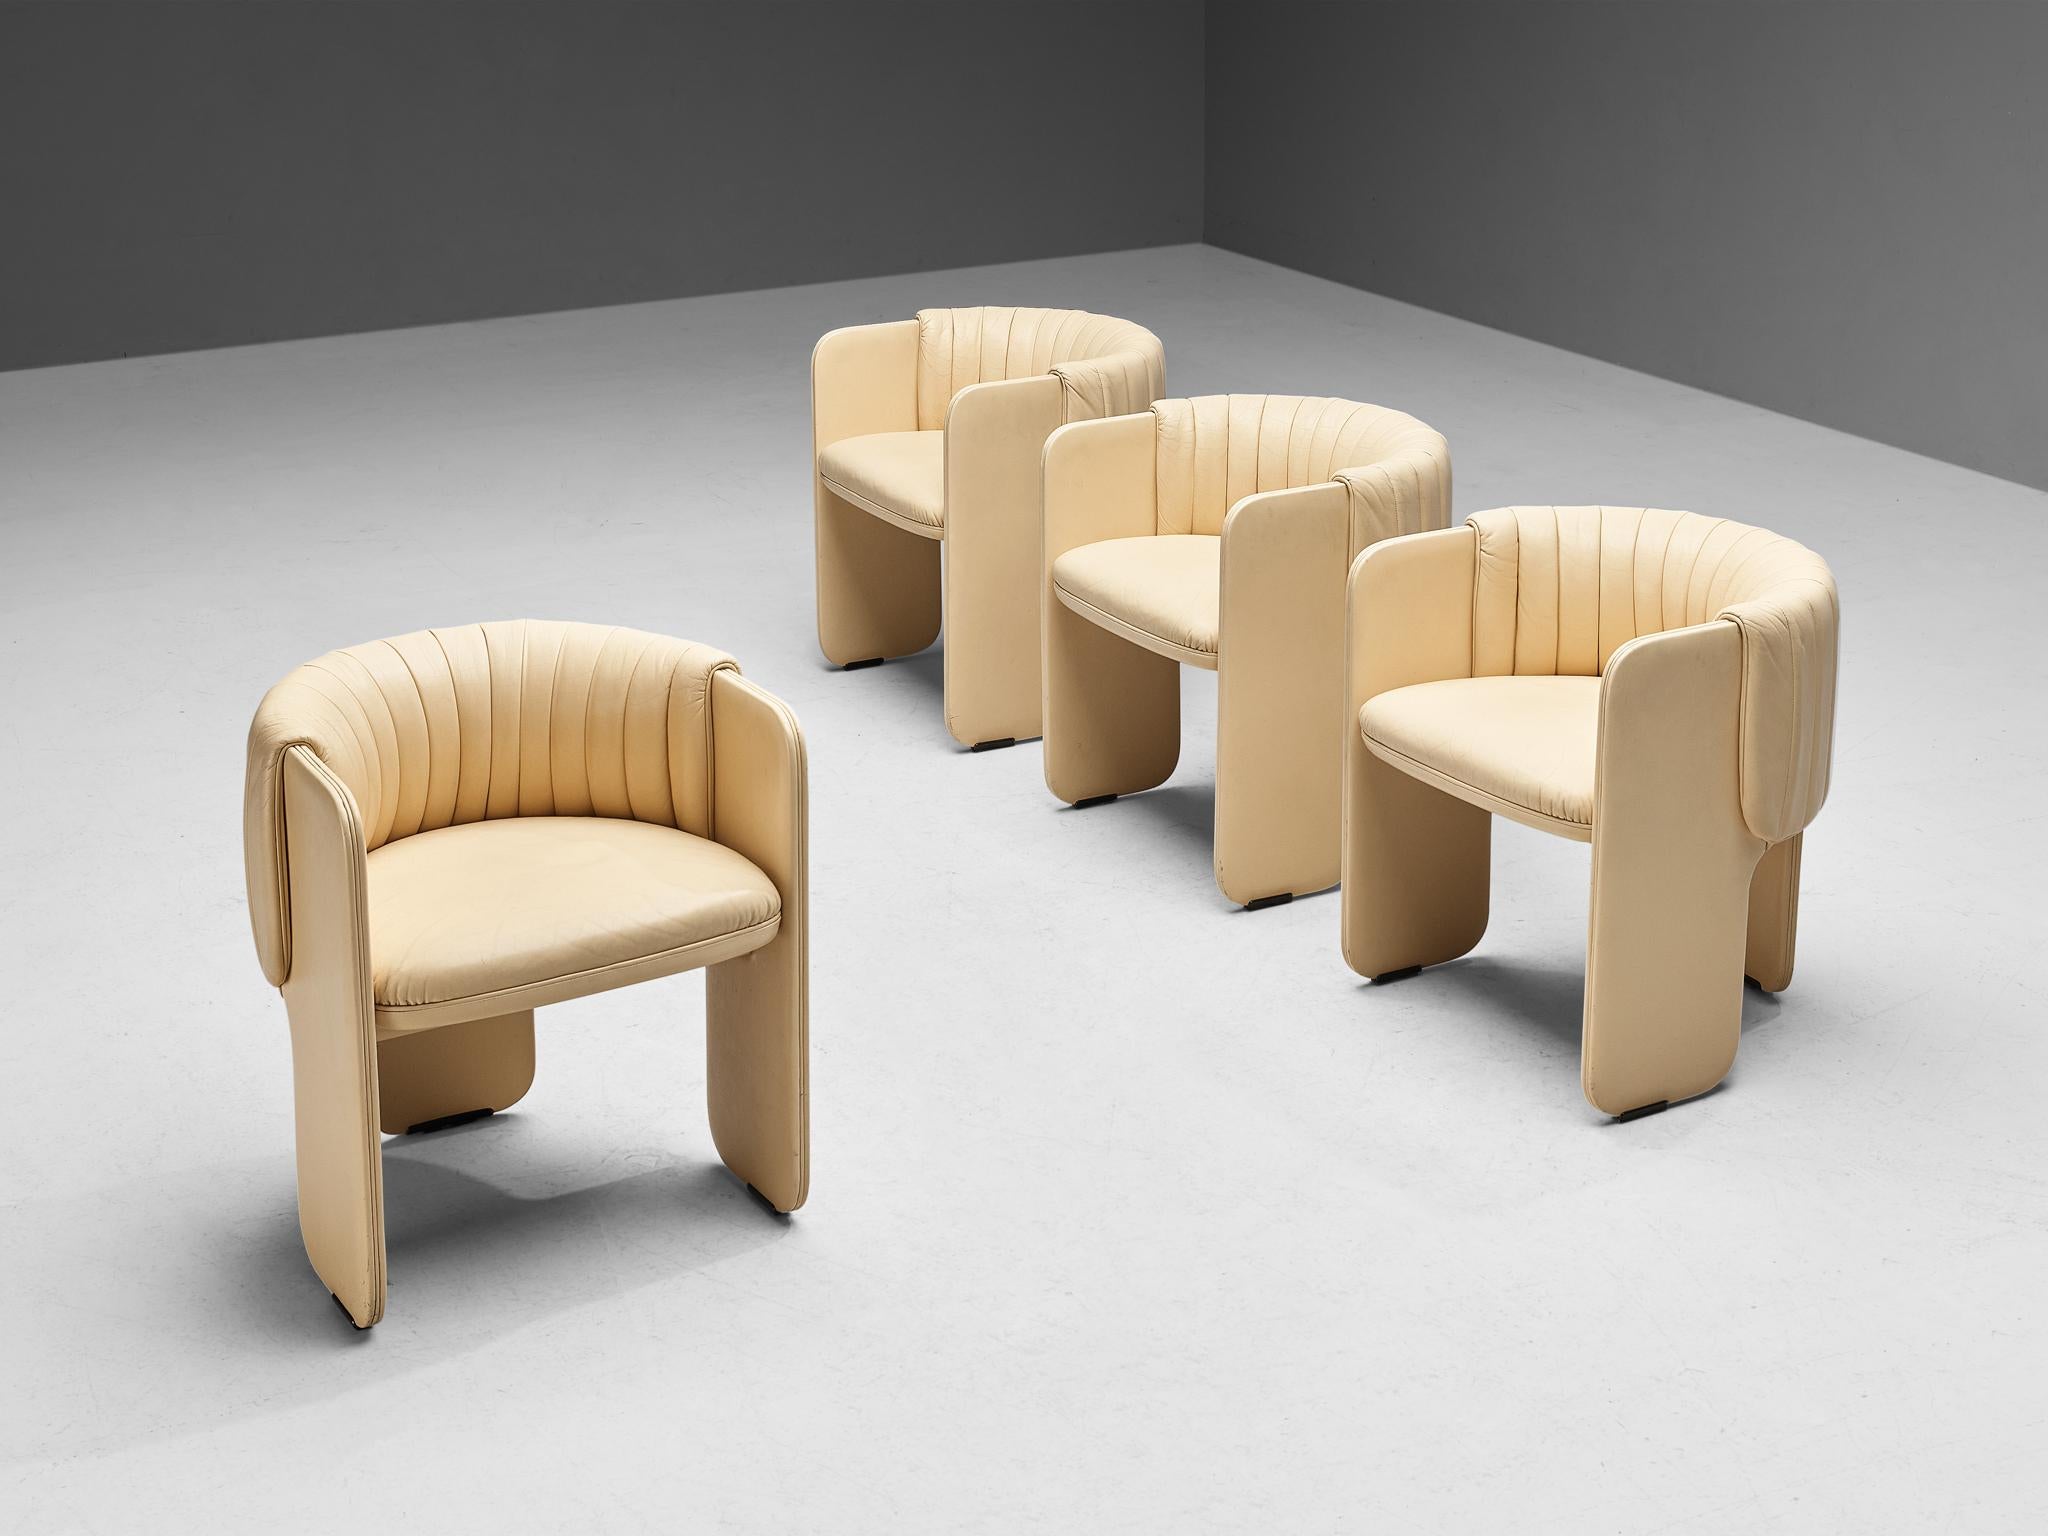 Luigi Massoni pour Poltrona Frau, ensemble de quatre fauteuils modèle 'Dinette', cuir, Italie, 1972.

Cet ensemble de fauteuils incarne une construction splendide basée sur des formes caractéristiques et exécutée dans un cuir beige crème. Par